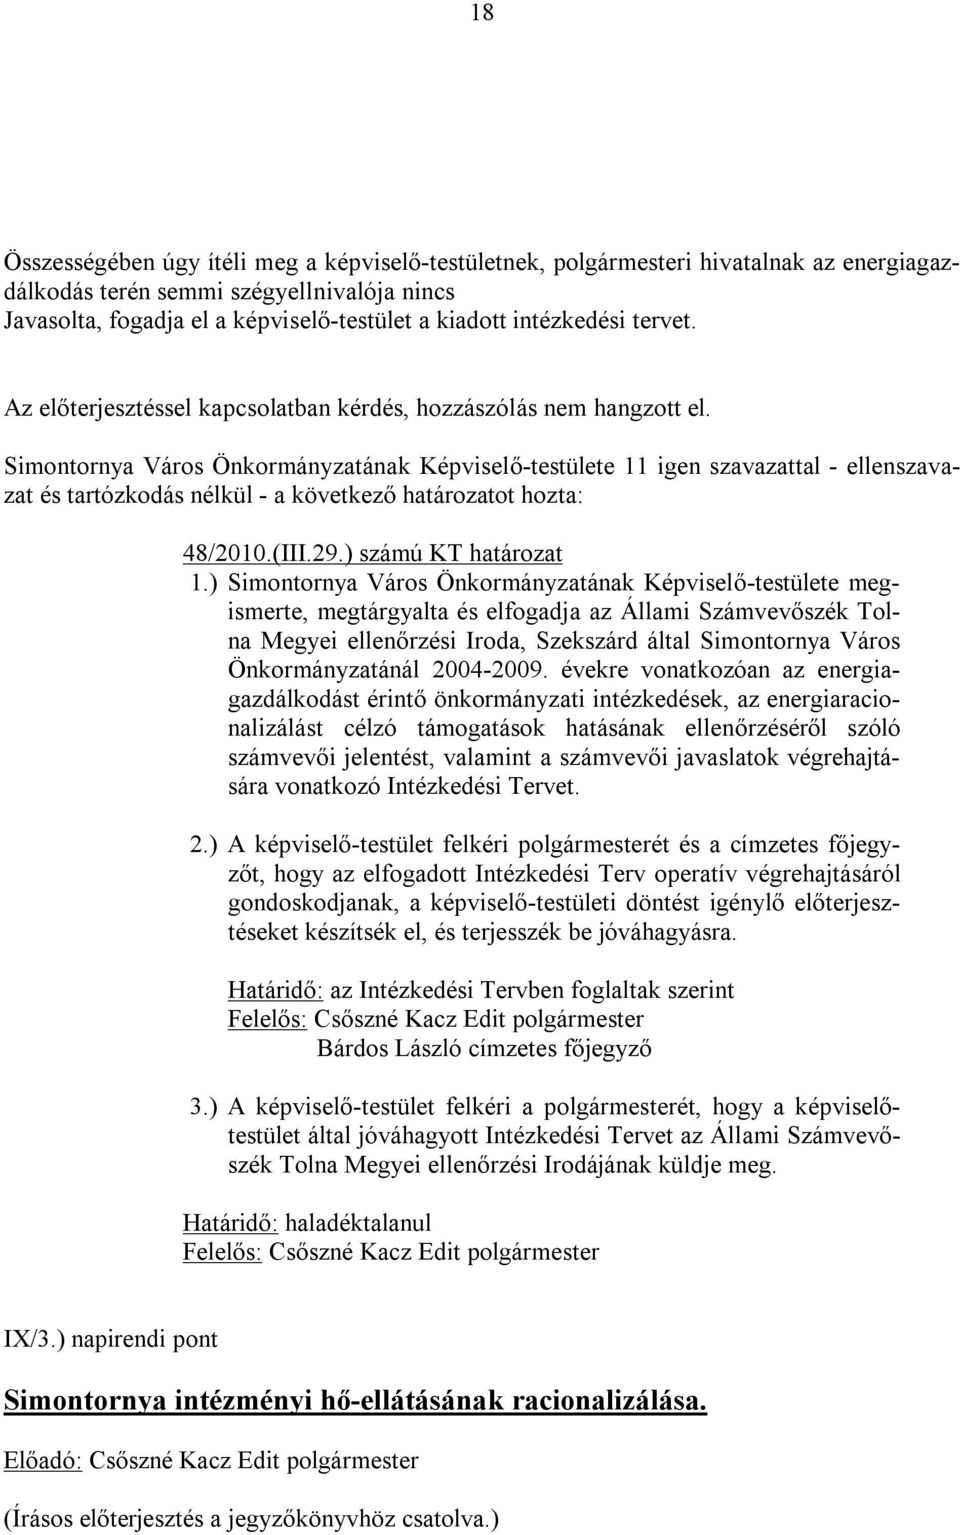 Simontornya Város Önkormányzatának Képviselő-testülete 11 igen szavazattal - ellenszavazat és tartózkodás nélkül - a következő határozatot hozta: 48/2010.(III.29.) számú KT határozat 1.